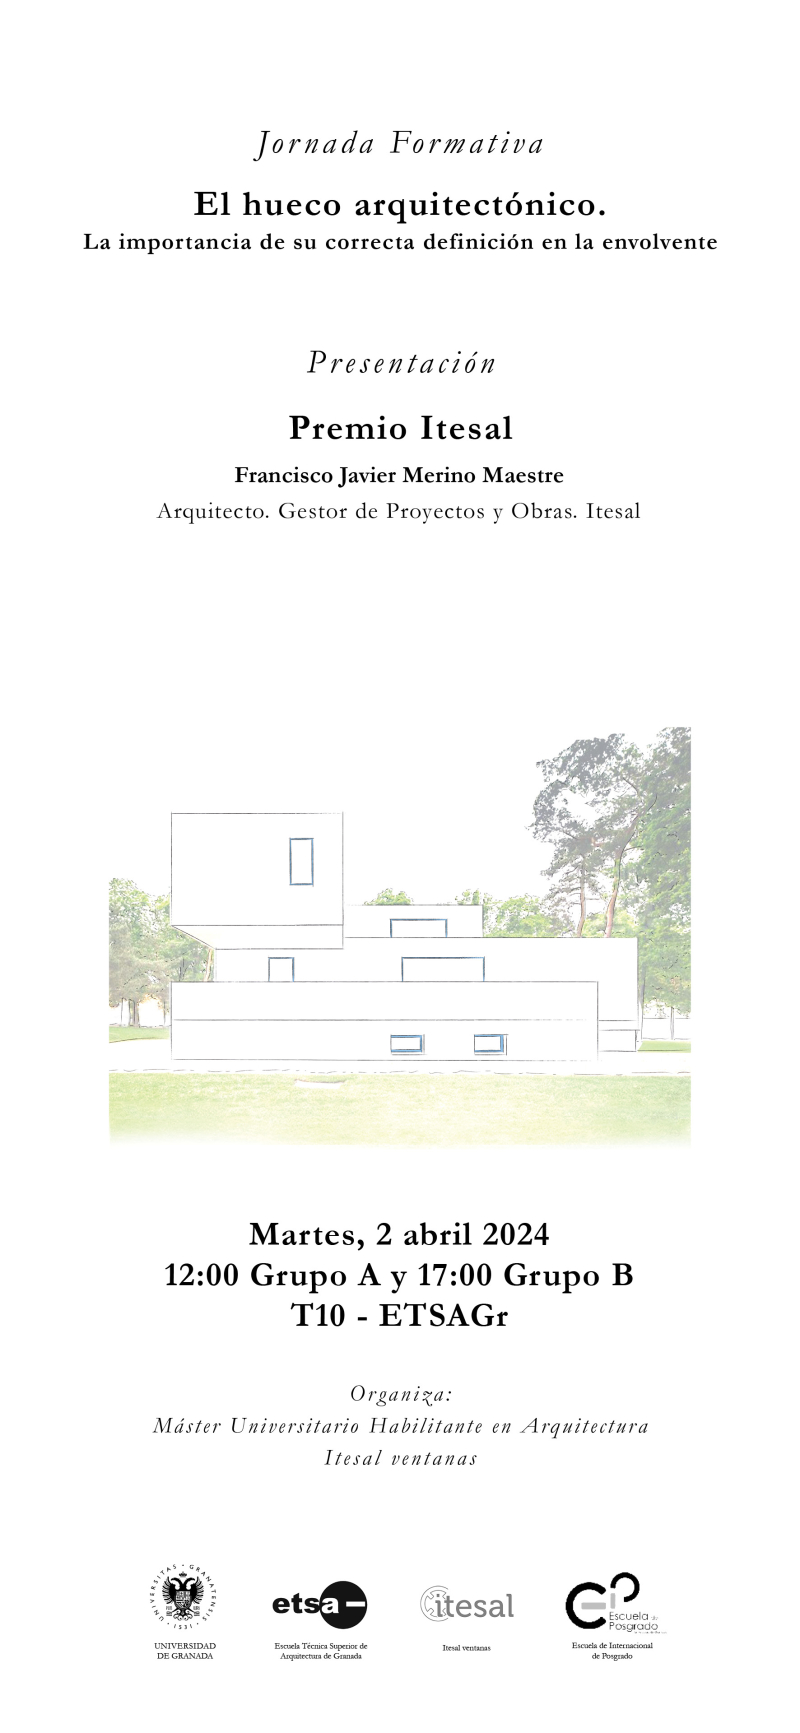 Cartel de la Jornada de Itesal y Presentación del Premio Itesal 2024